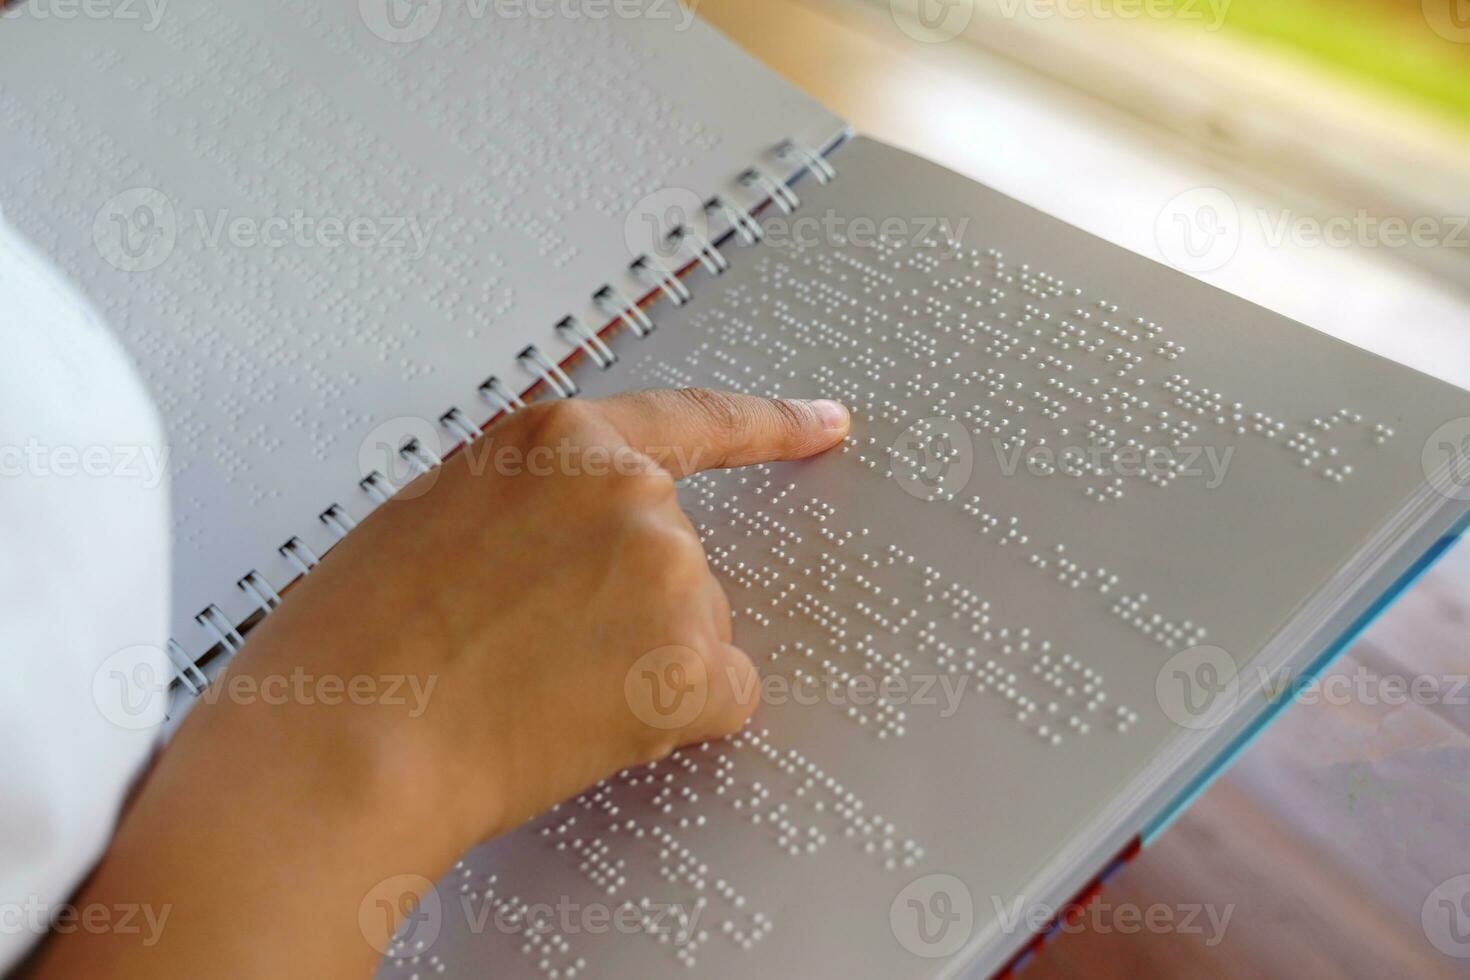 visuellement altéré la personne lit avec le sien les doigts une livre écrit dans braille il est écrit pour ceux qui sont visuellement altéré ou aveugle. il est une spécial code généré de 6 points dans le boîte. photo